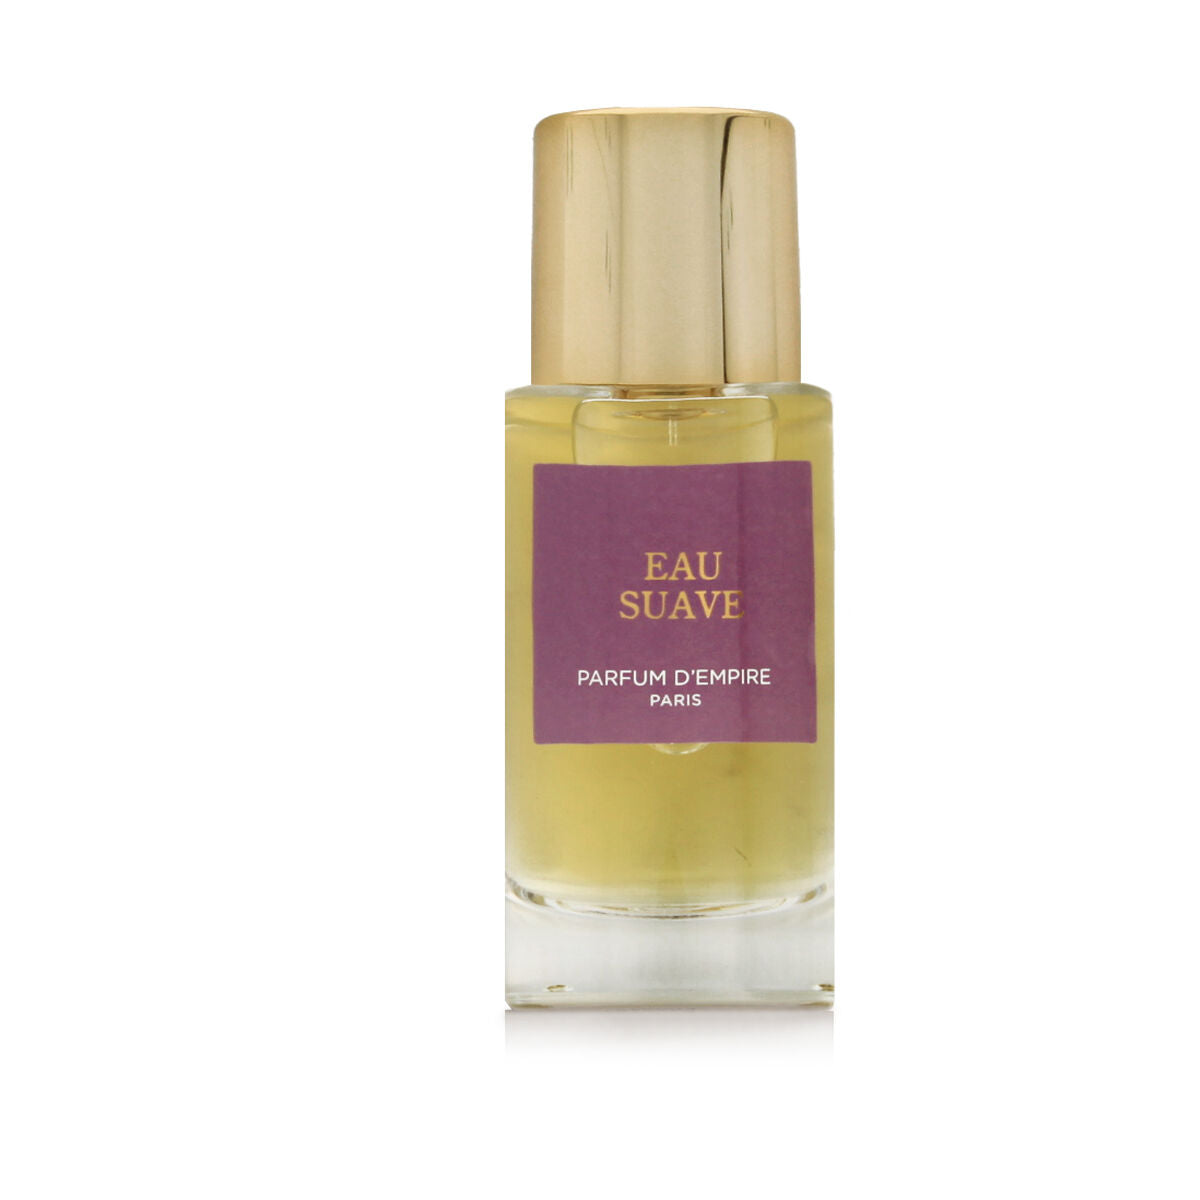 Women's Perfume Parfum d'Empire EDP Eau Suave 50 ml-1